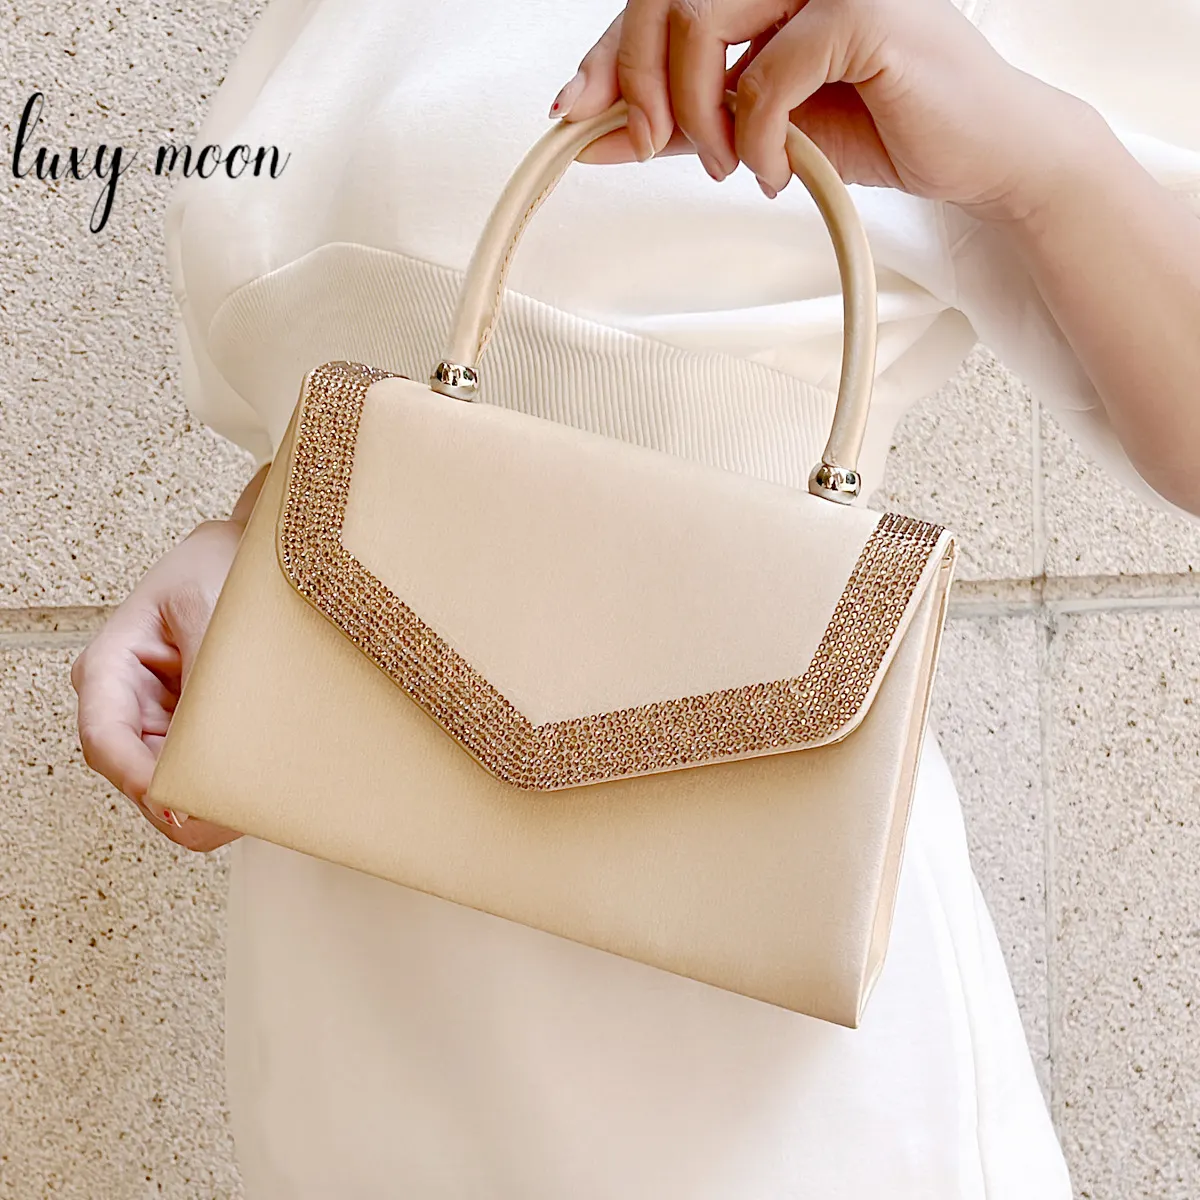 लोकप्रिय गोल्डन हैंड बैग महिलाओं के लिए लक्जरी नई डिज़ाइन मनी क्लच बैग शाम की थैलियां महिलाओं के लिए क्लच पर्स